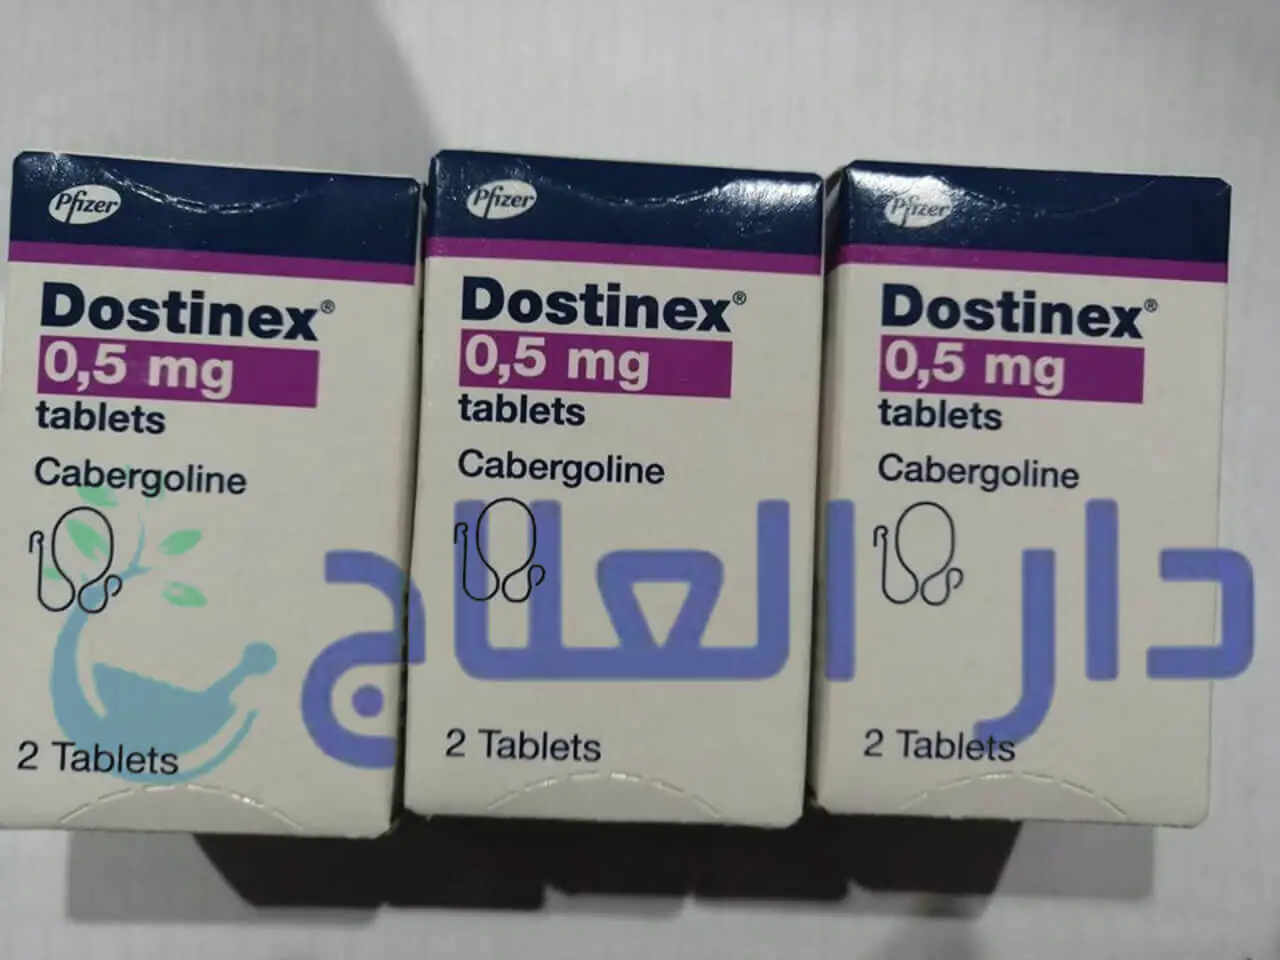 دوستينكس dostinex اقراص لعلاج الاضطرابات الهرمونية دار العلاج